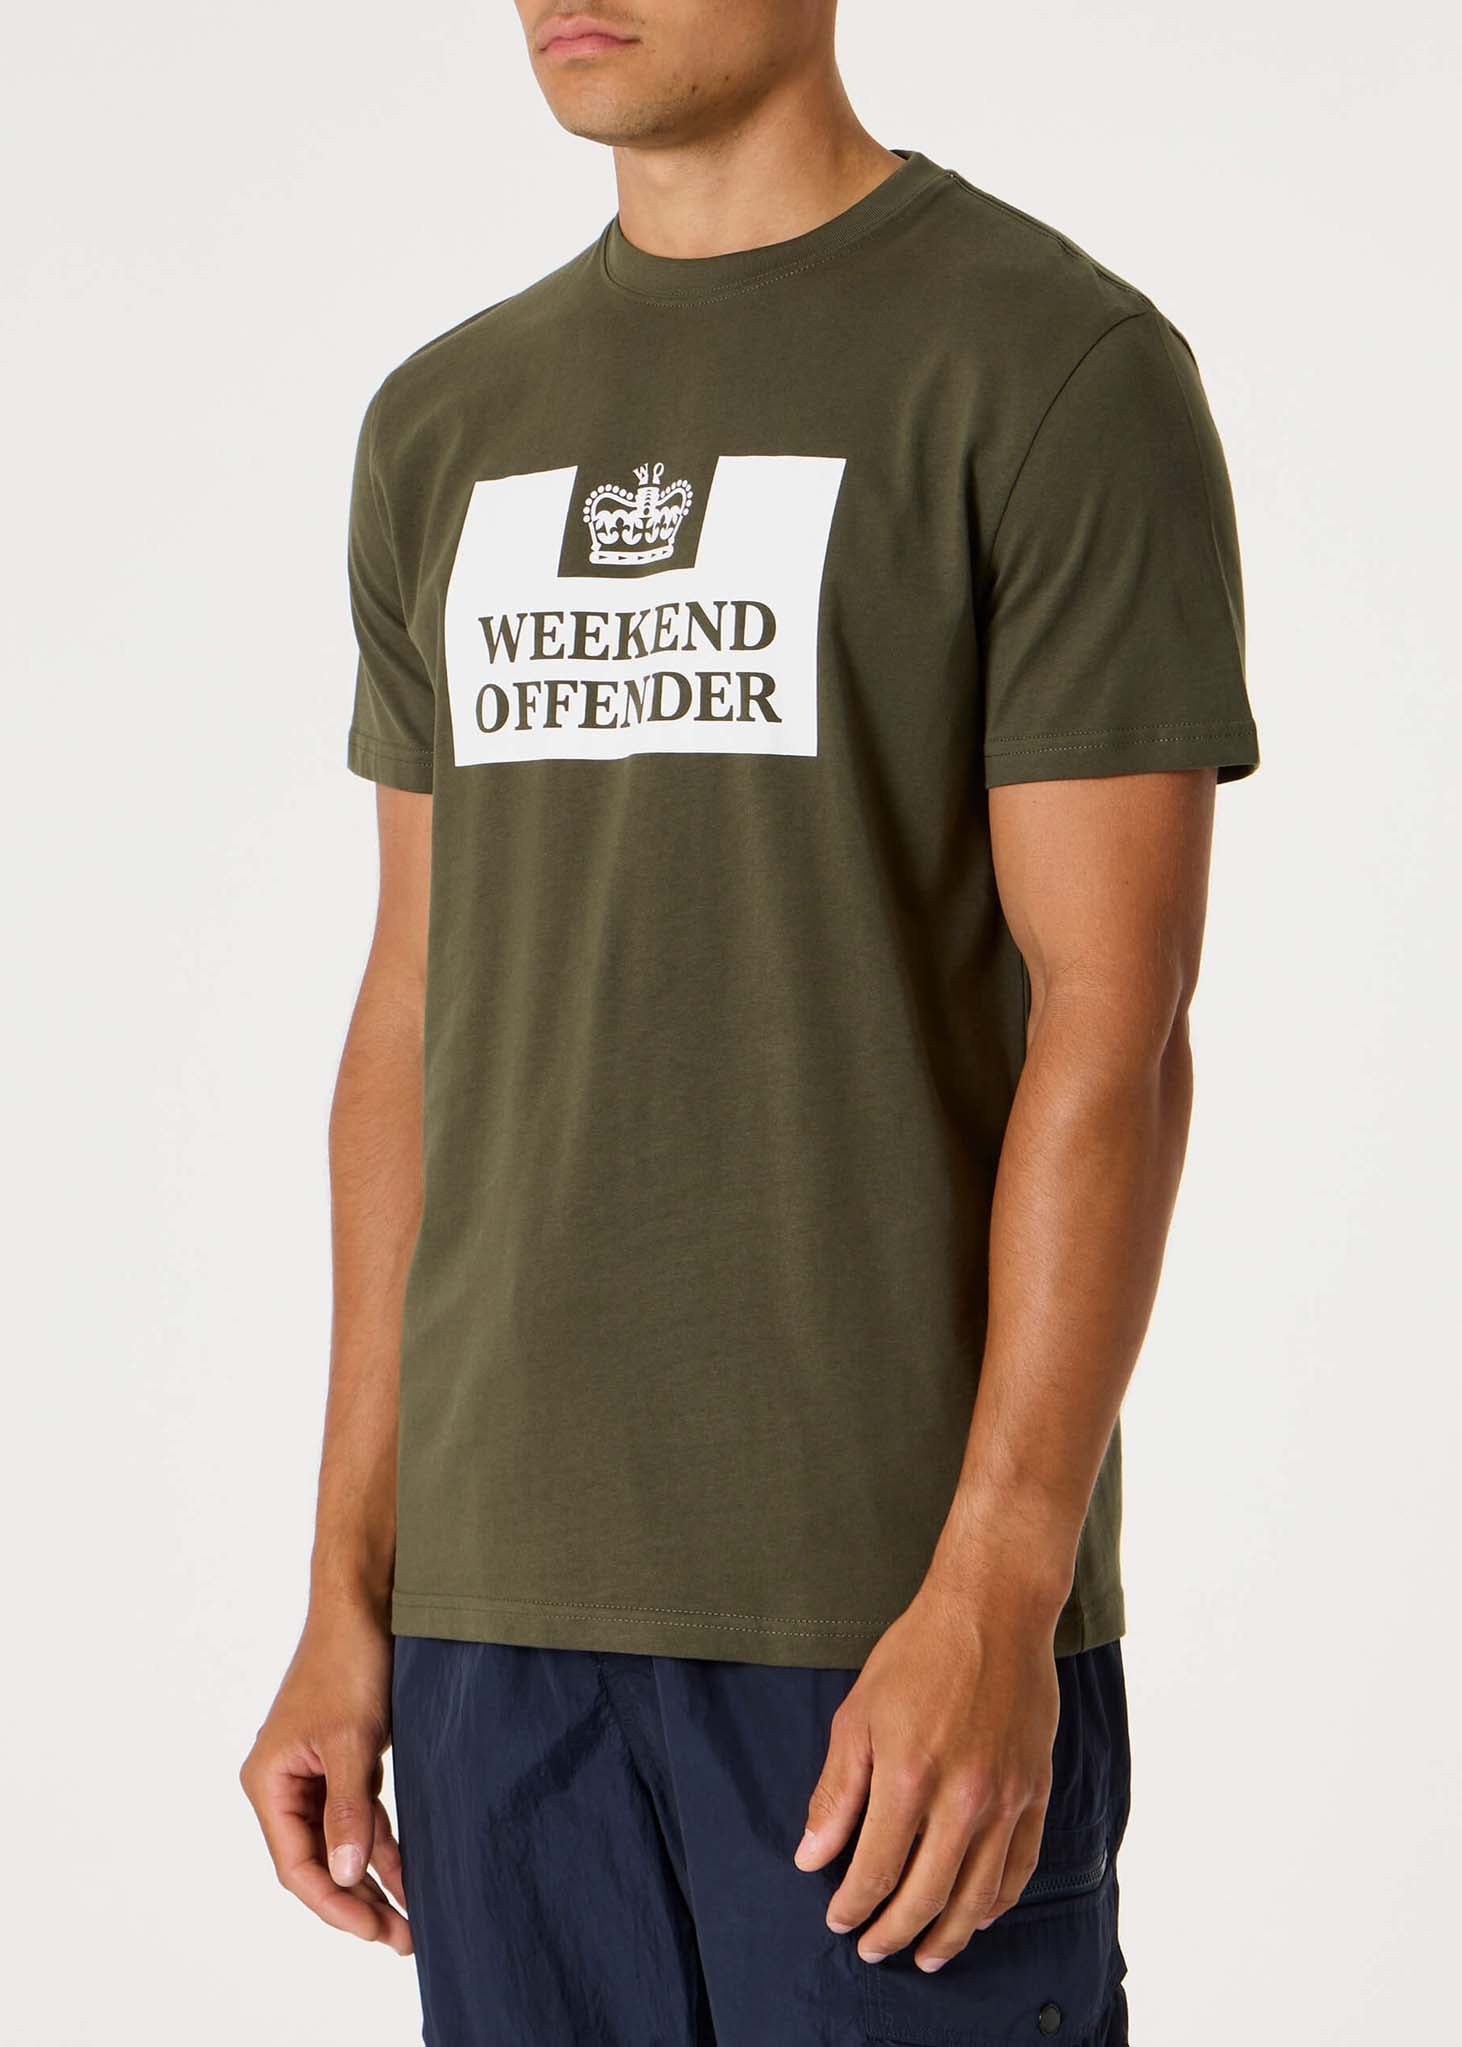 weekend offender t-shirt dark green